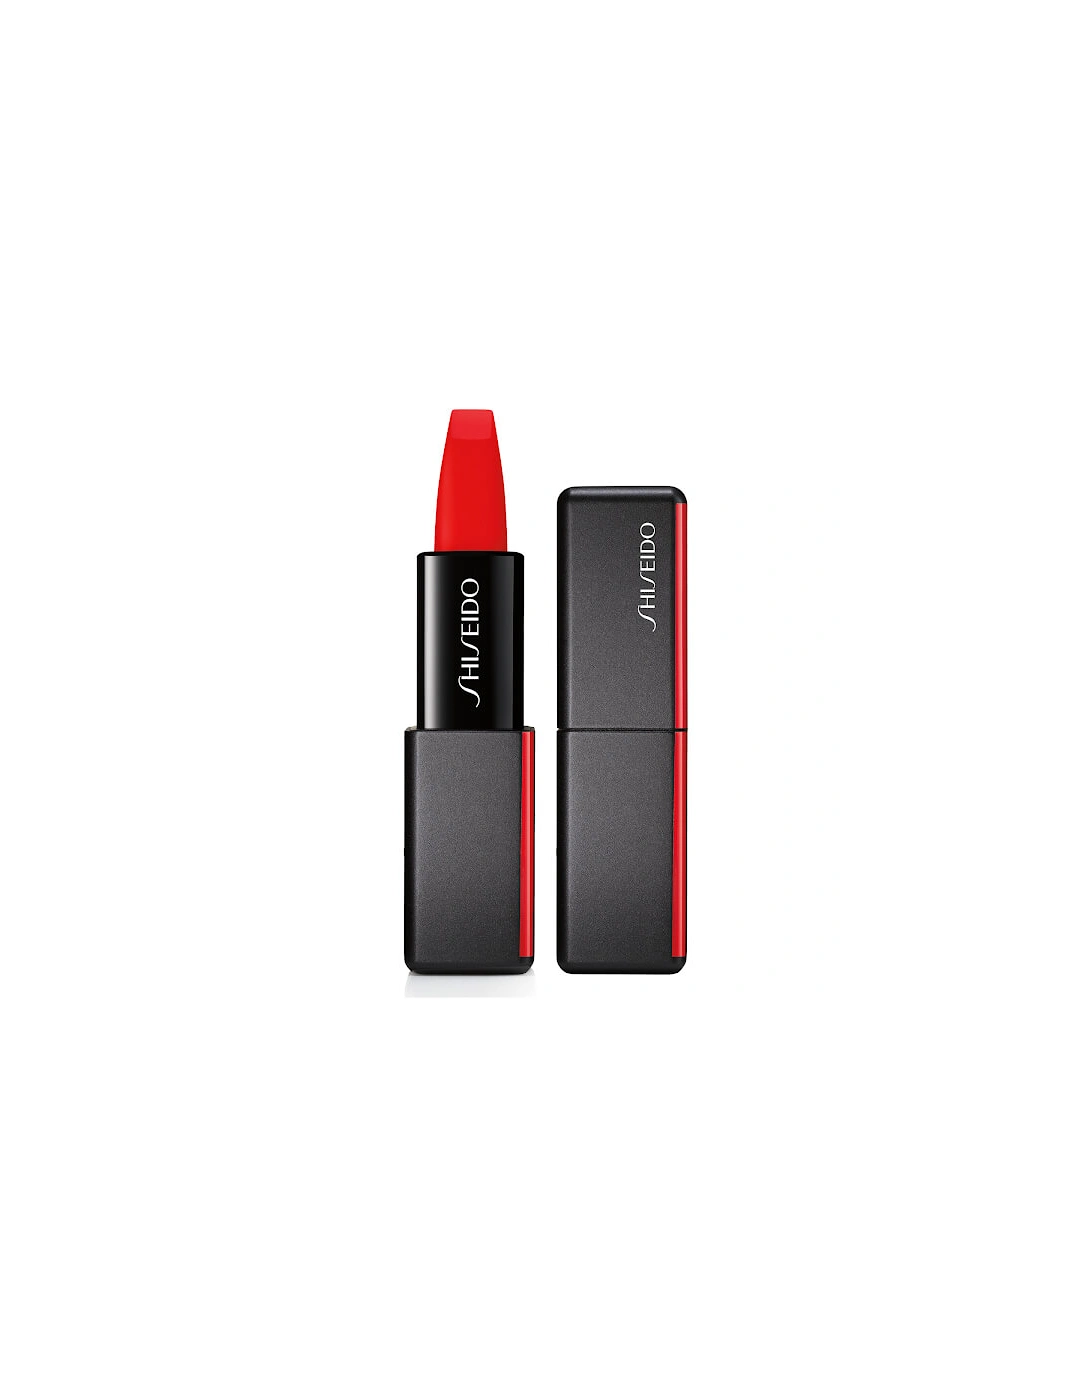 ModernMatte Powder Lipstick - Night Life 510 - Shiseido, 2 of 1